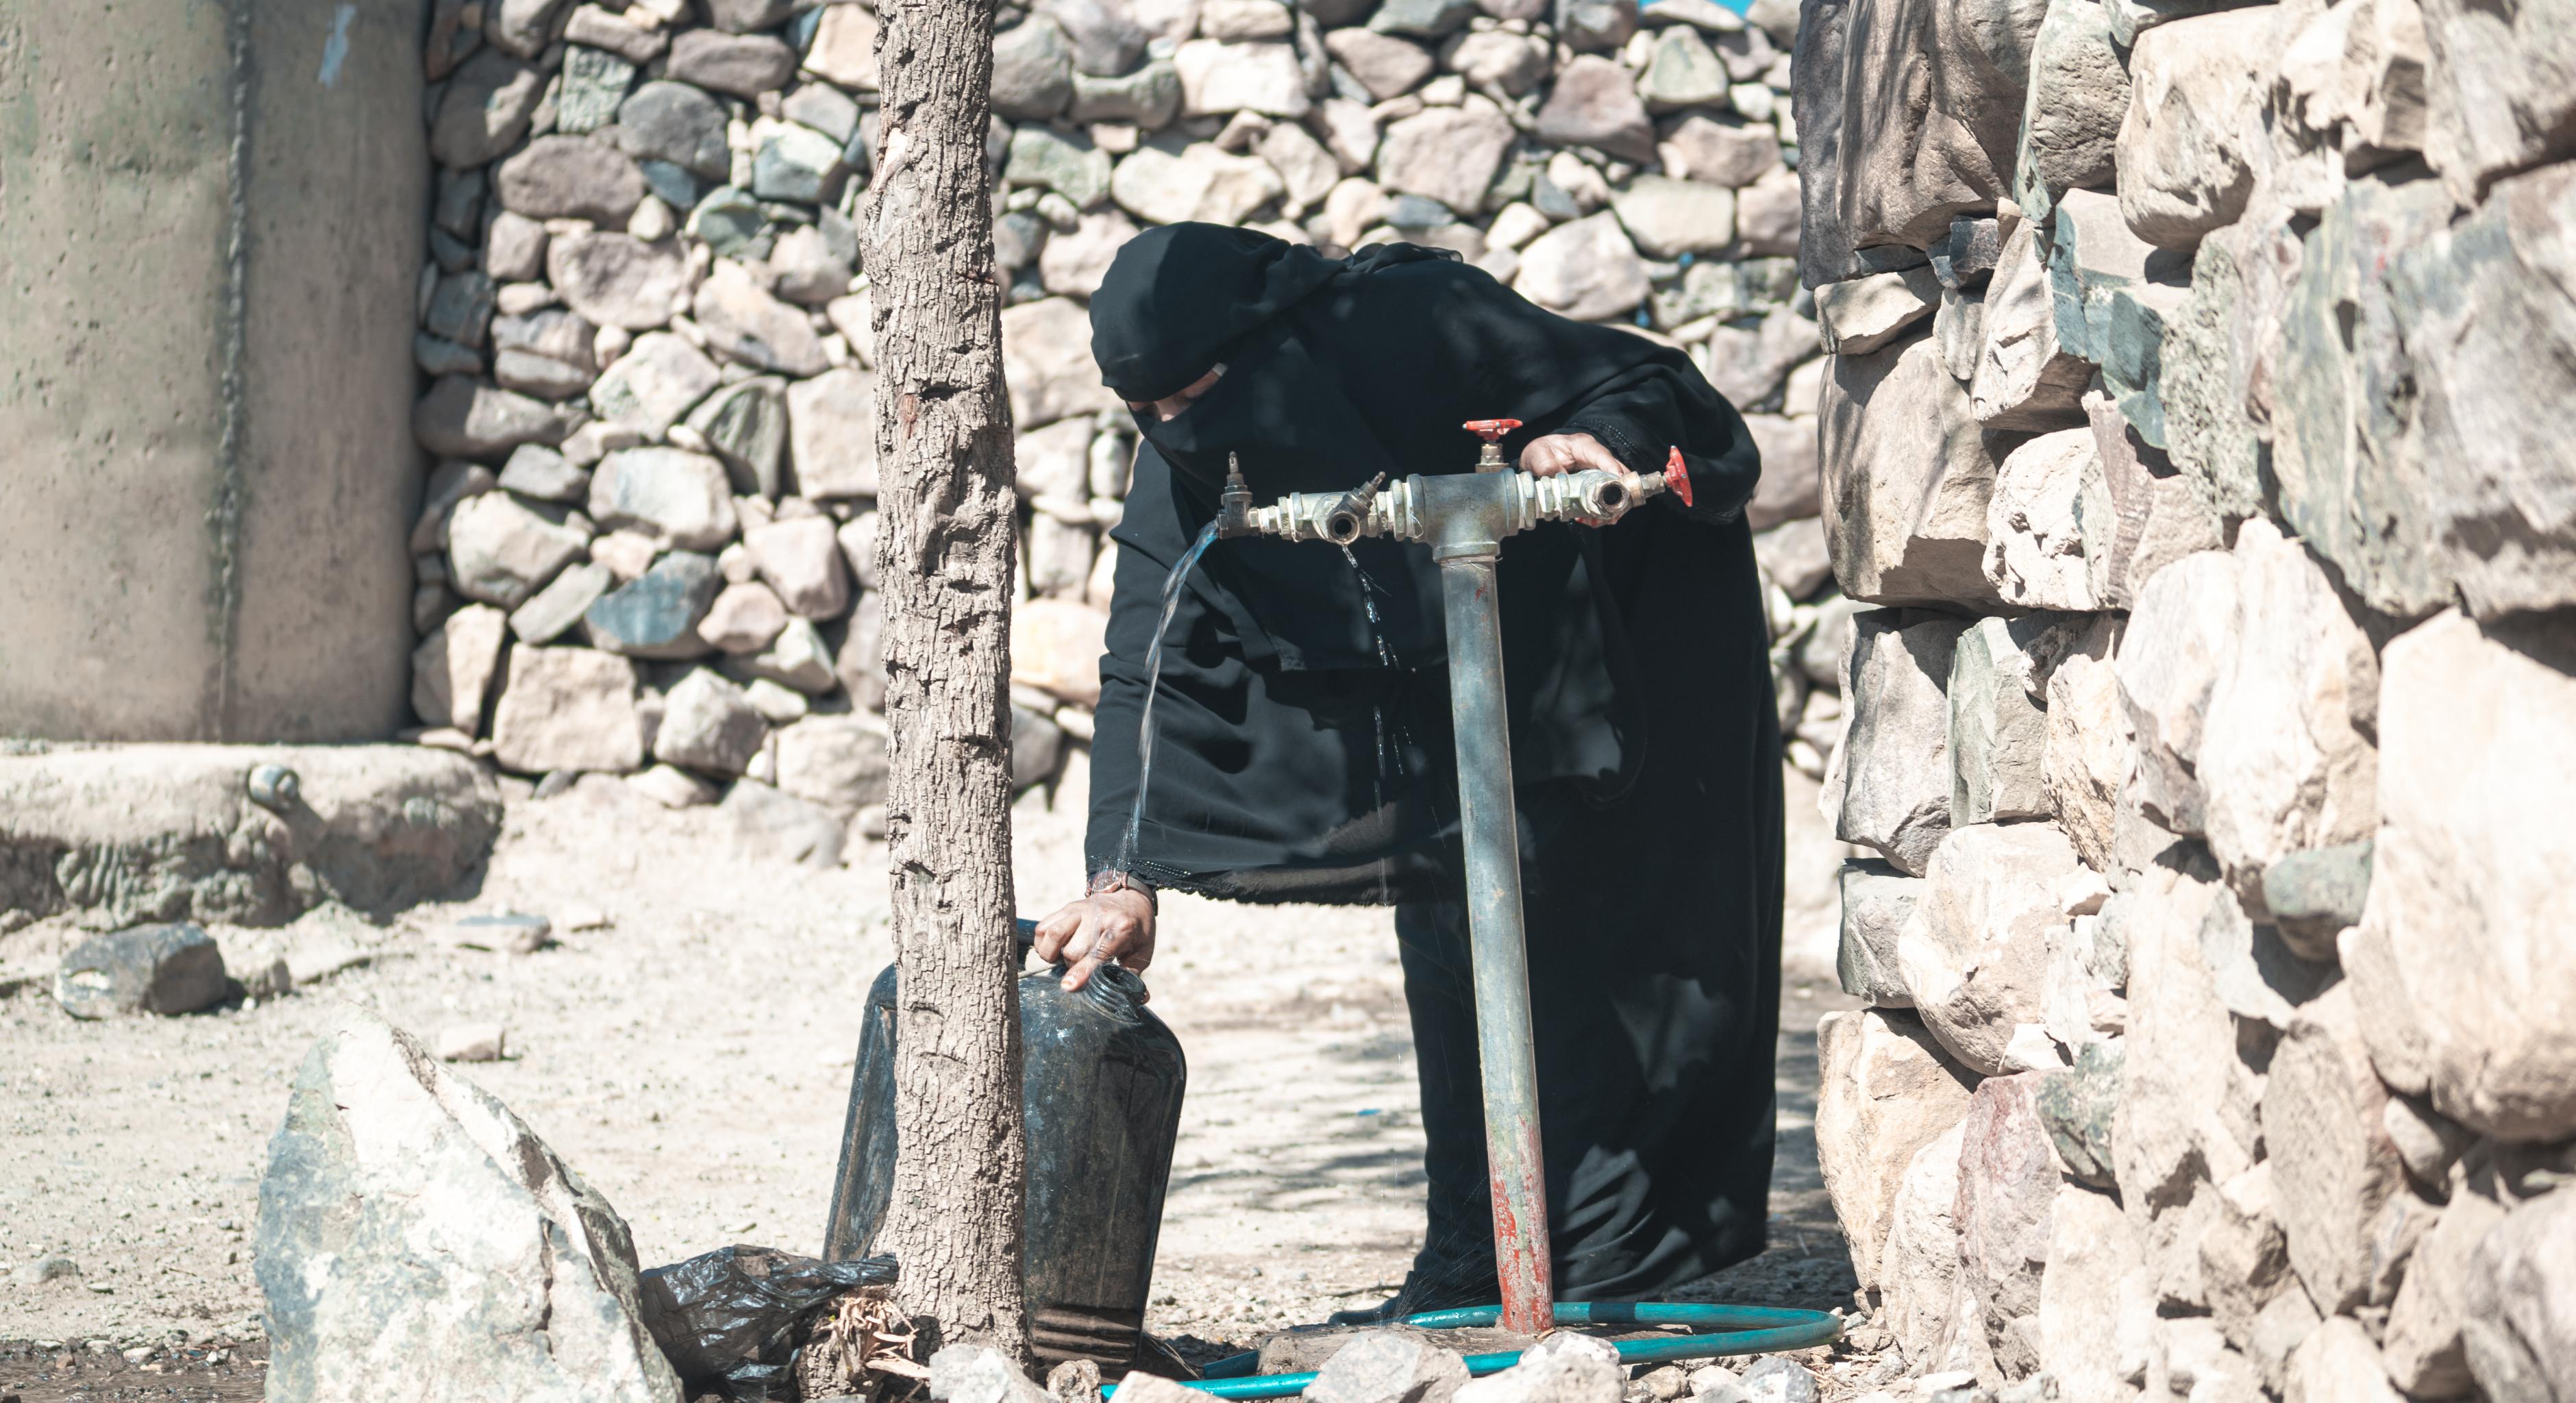 Haneen* (in schwarzem Gewand und mit Niqab bekleidet) dreht einen Wasserhahn vor ihrem Haus auf, um einen Wasserkanister zu befüllen.